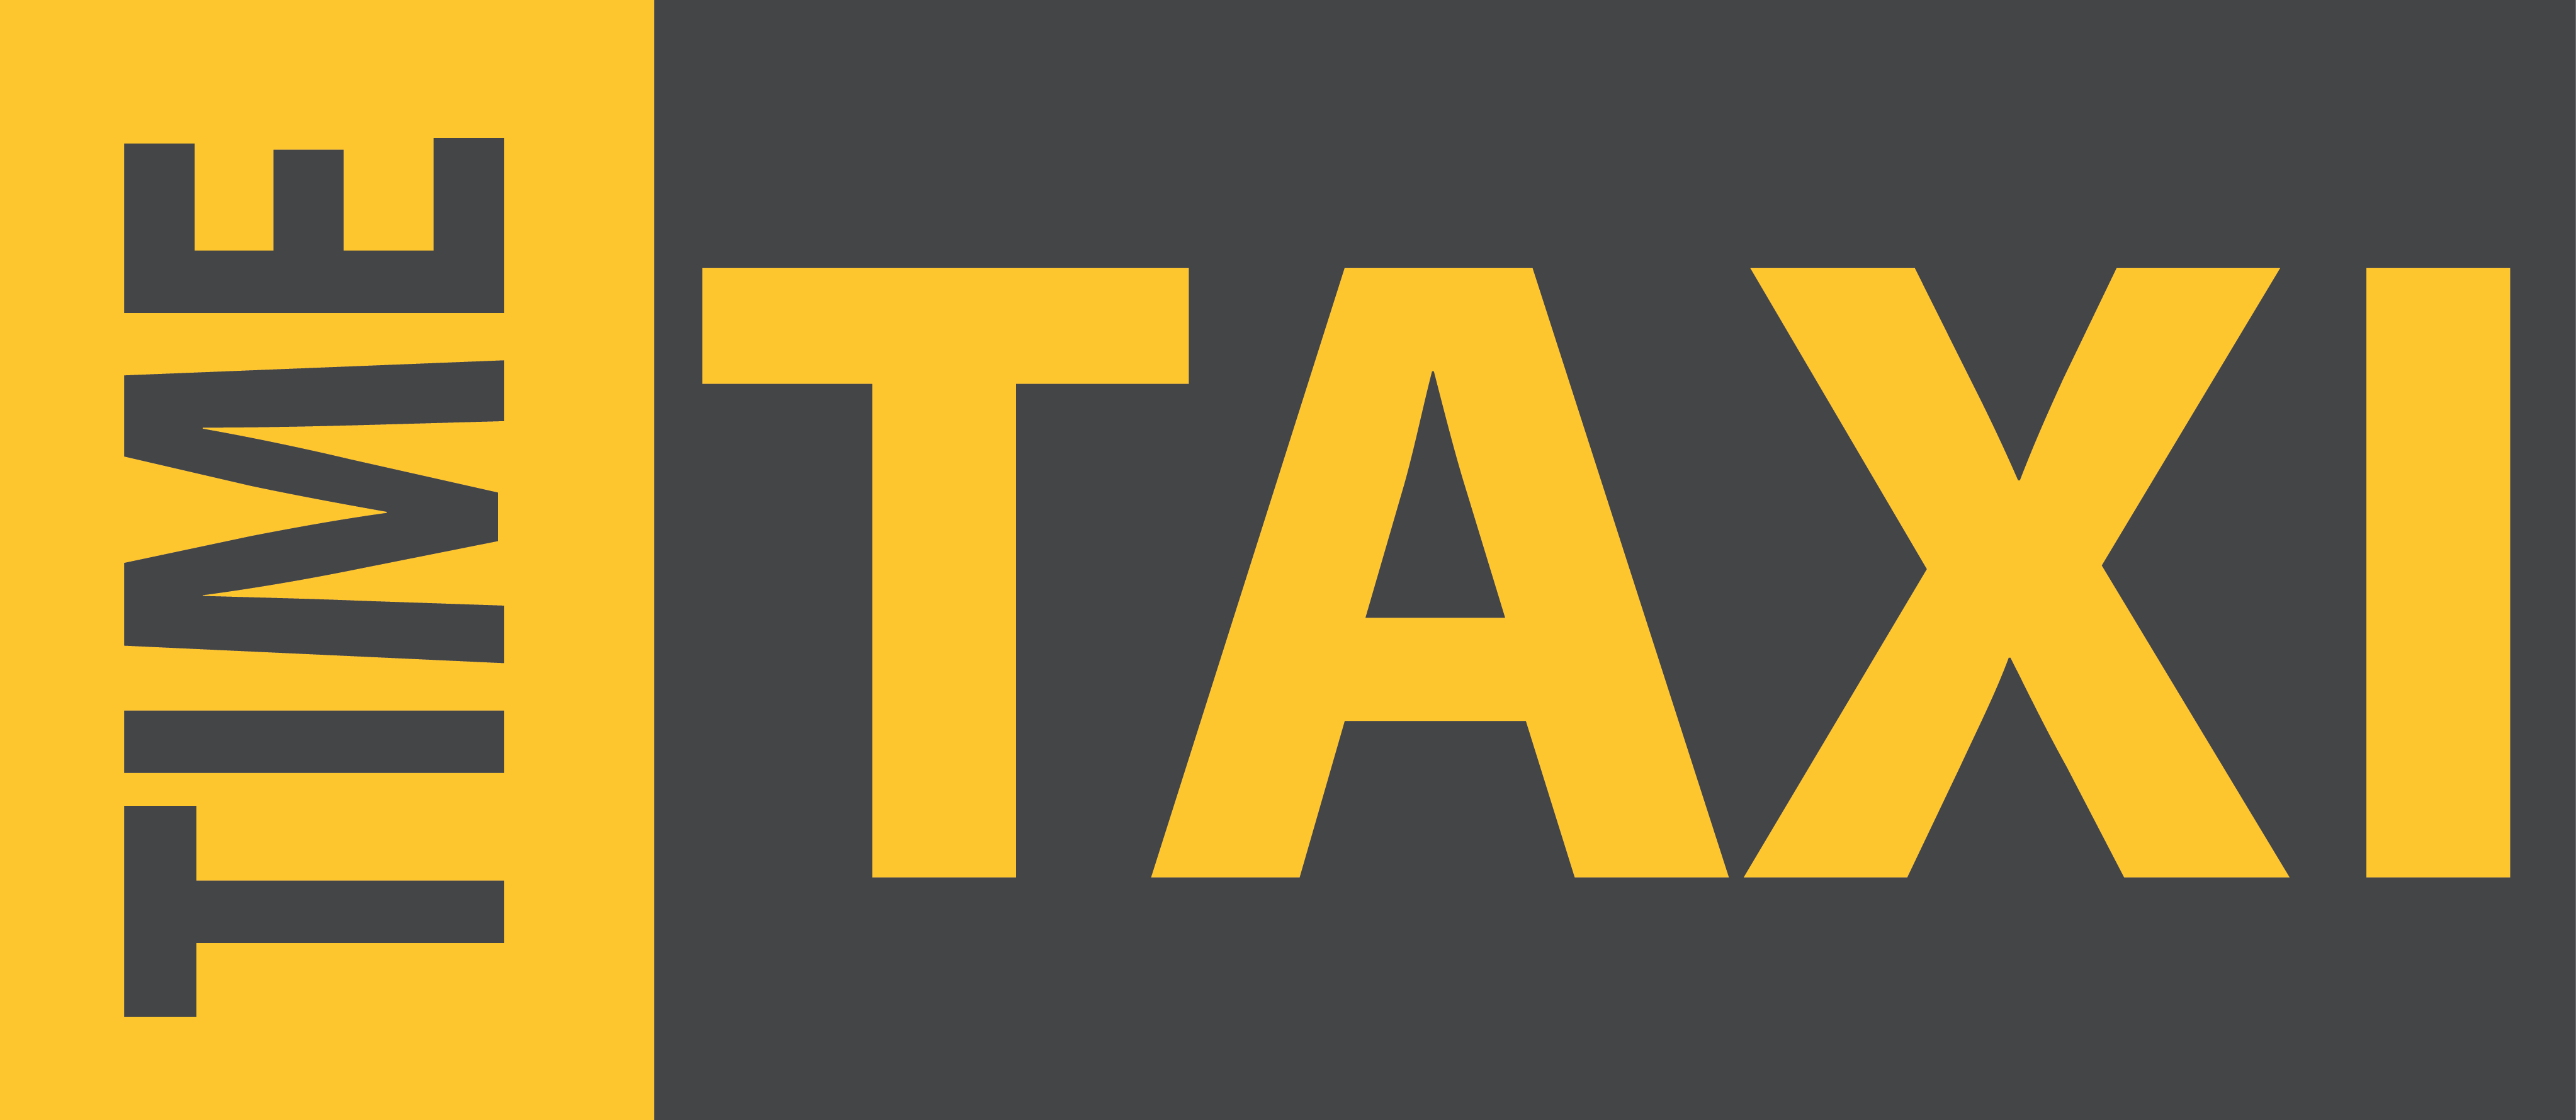 Time Taxi Logo Wallpaper